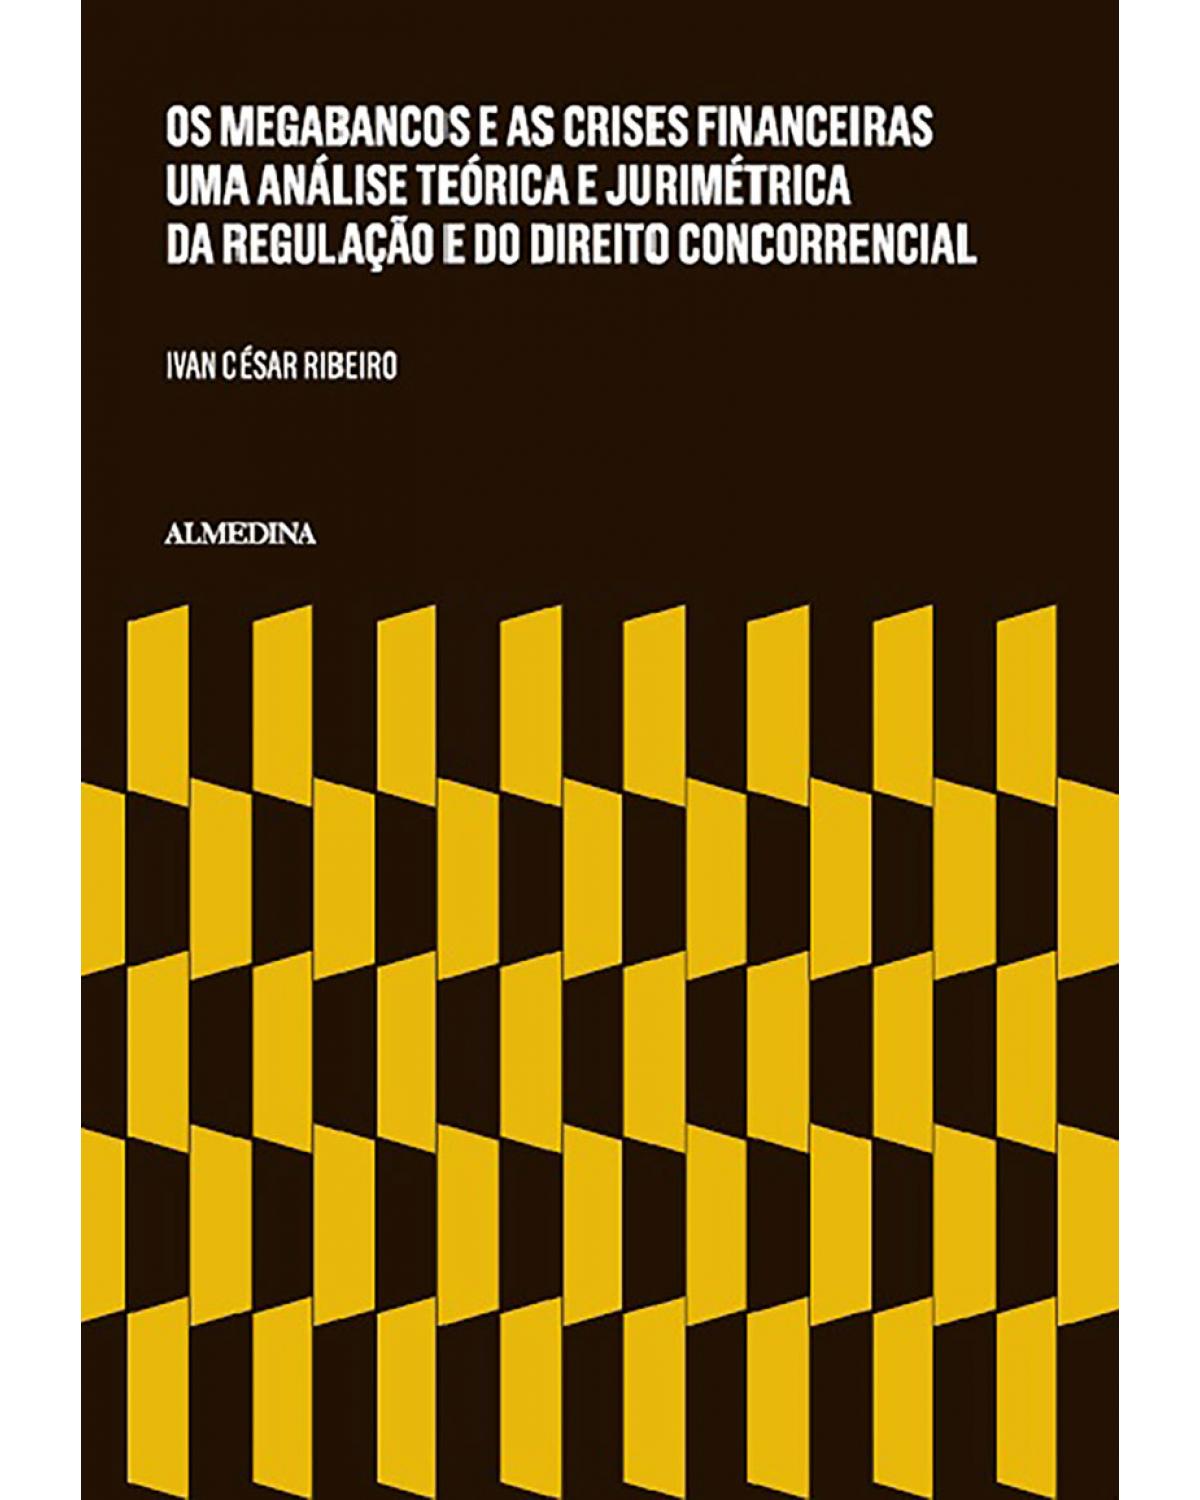 Os megabancos e as crises financeiras - Uma análise teórica e jurimétrica da regulação e do direito concorrencial - 1ª Edição | 2015